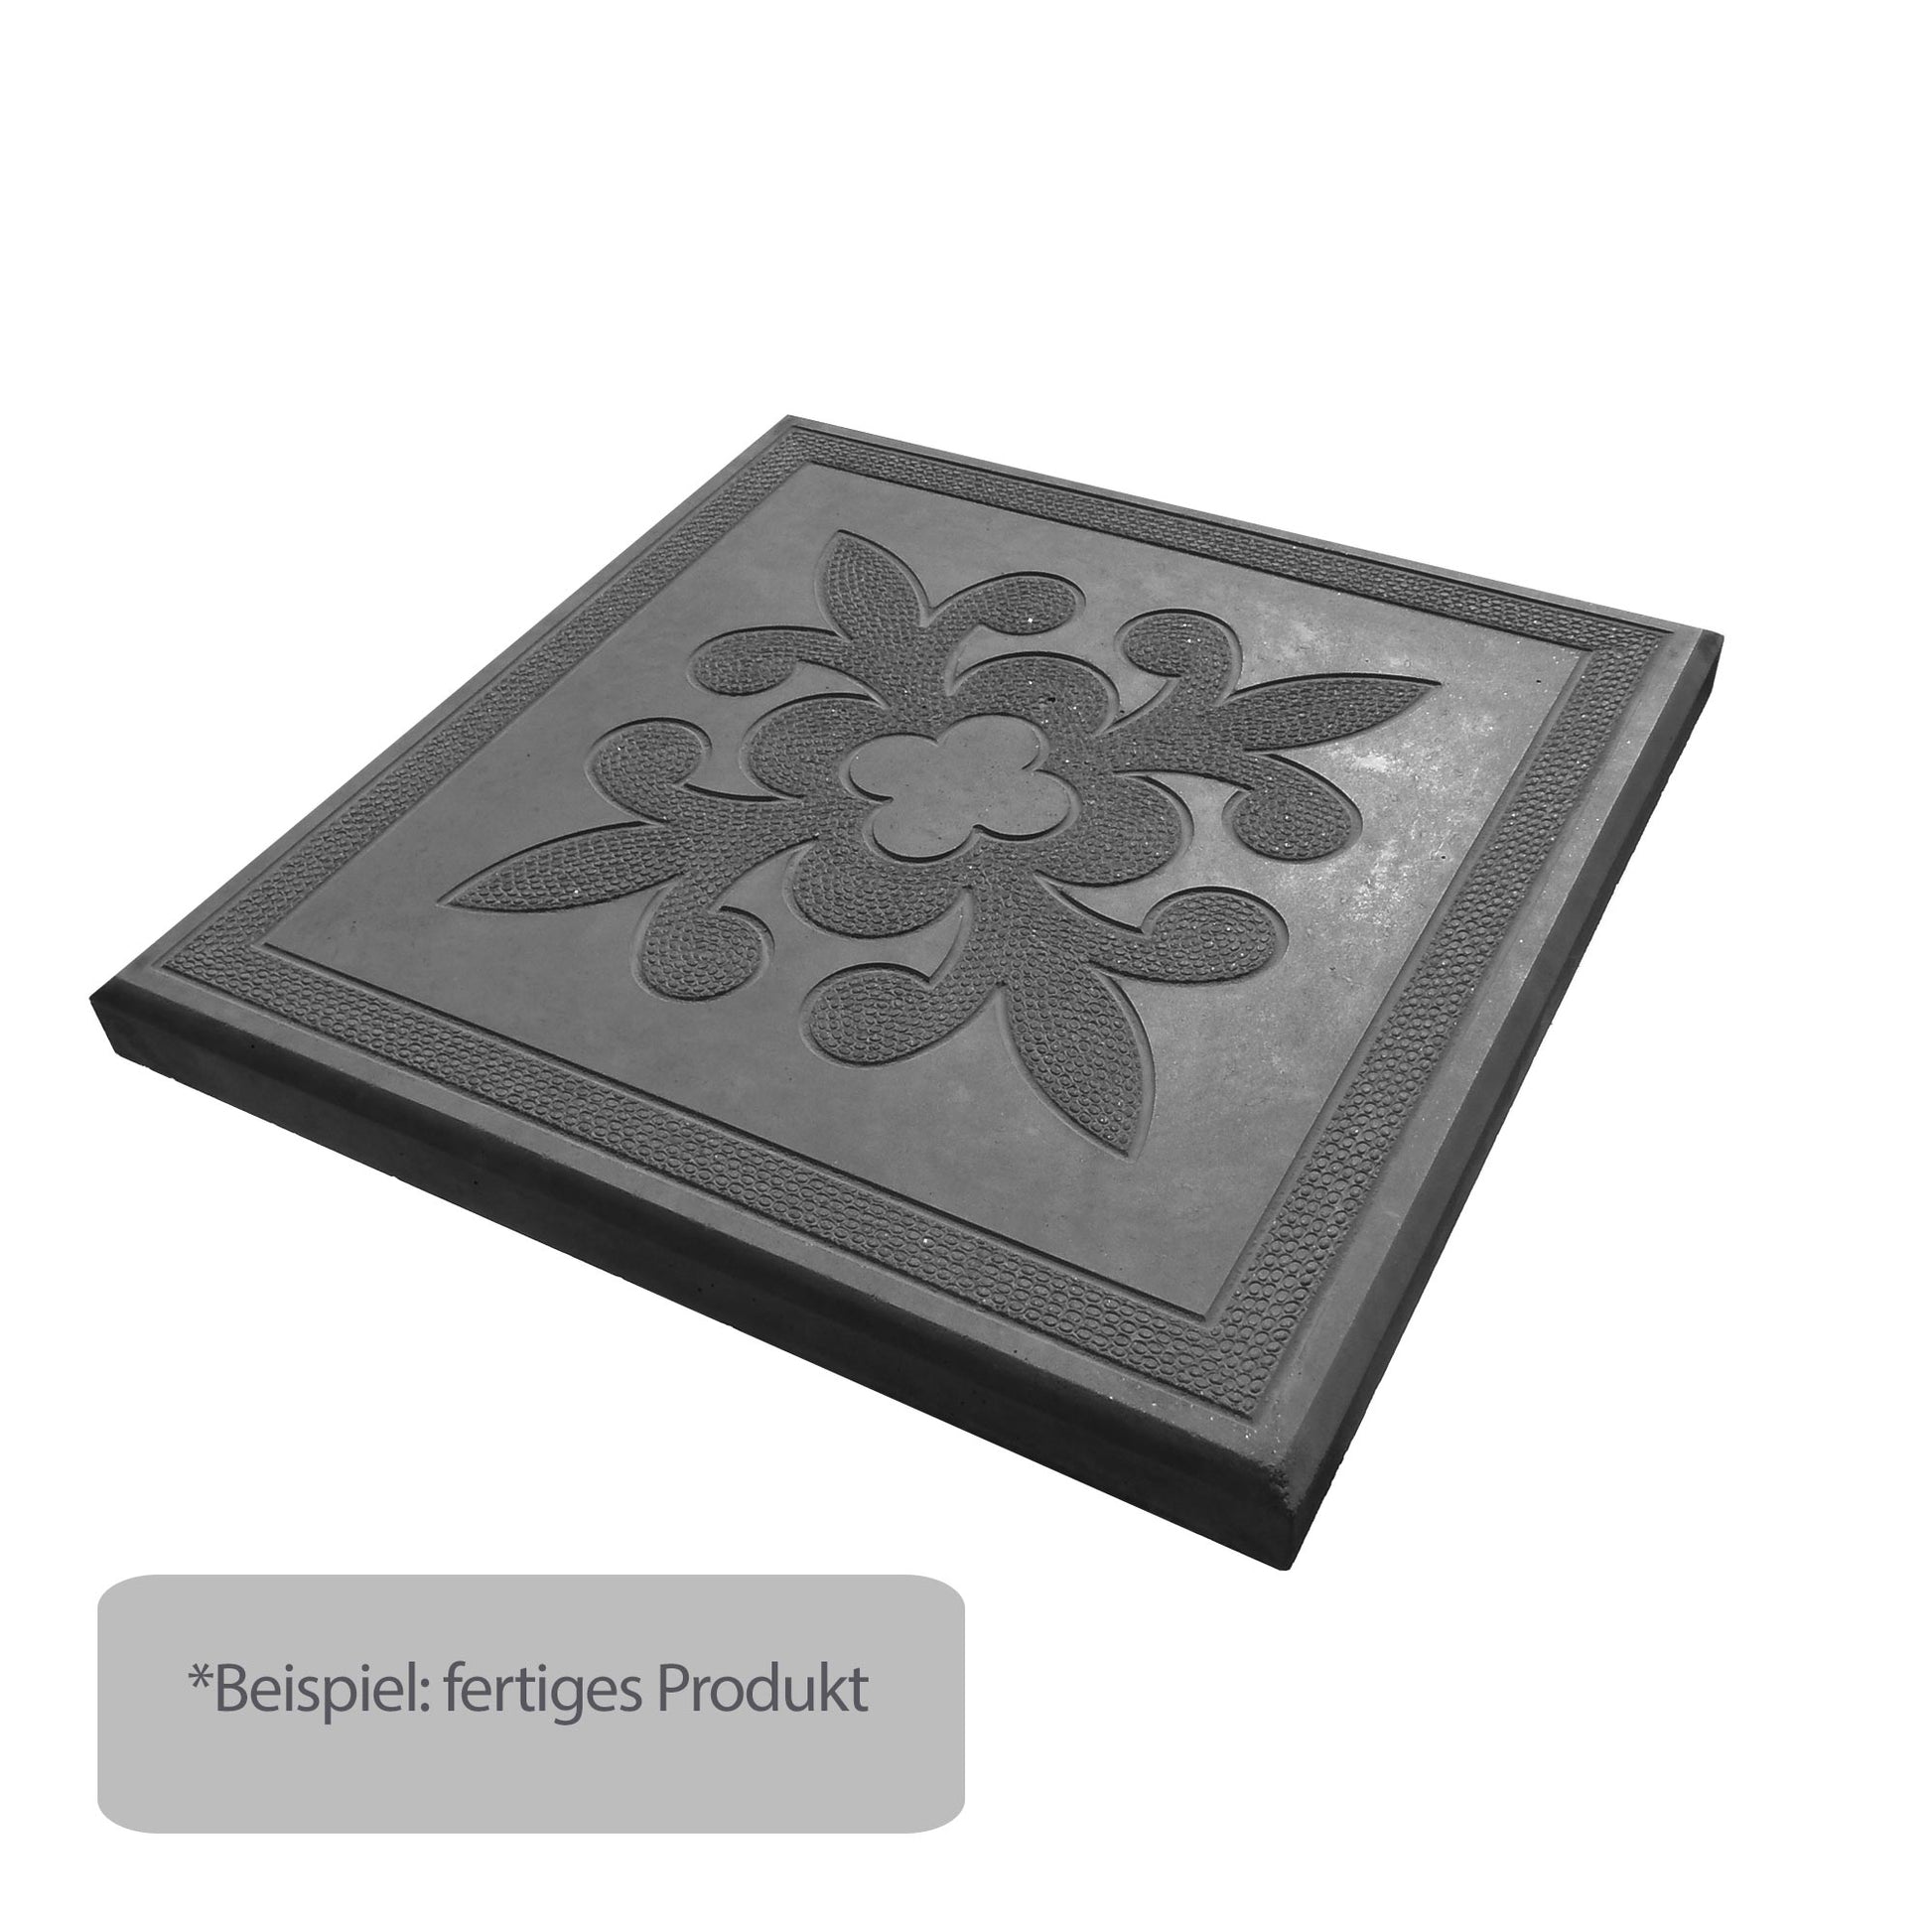 Schwarzpigment für Beton / Zement / Gips - 1kg - Farbstein